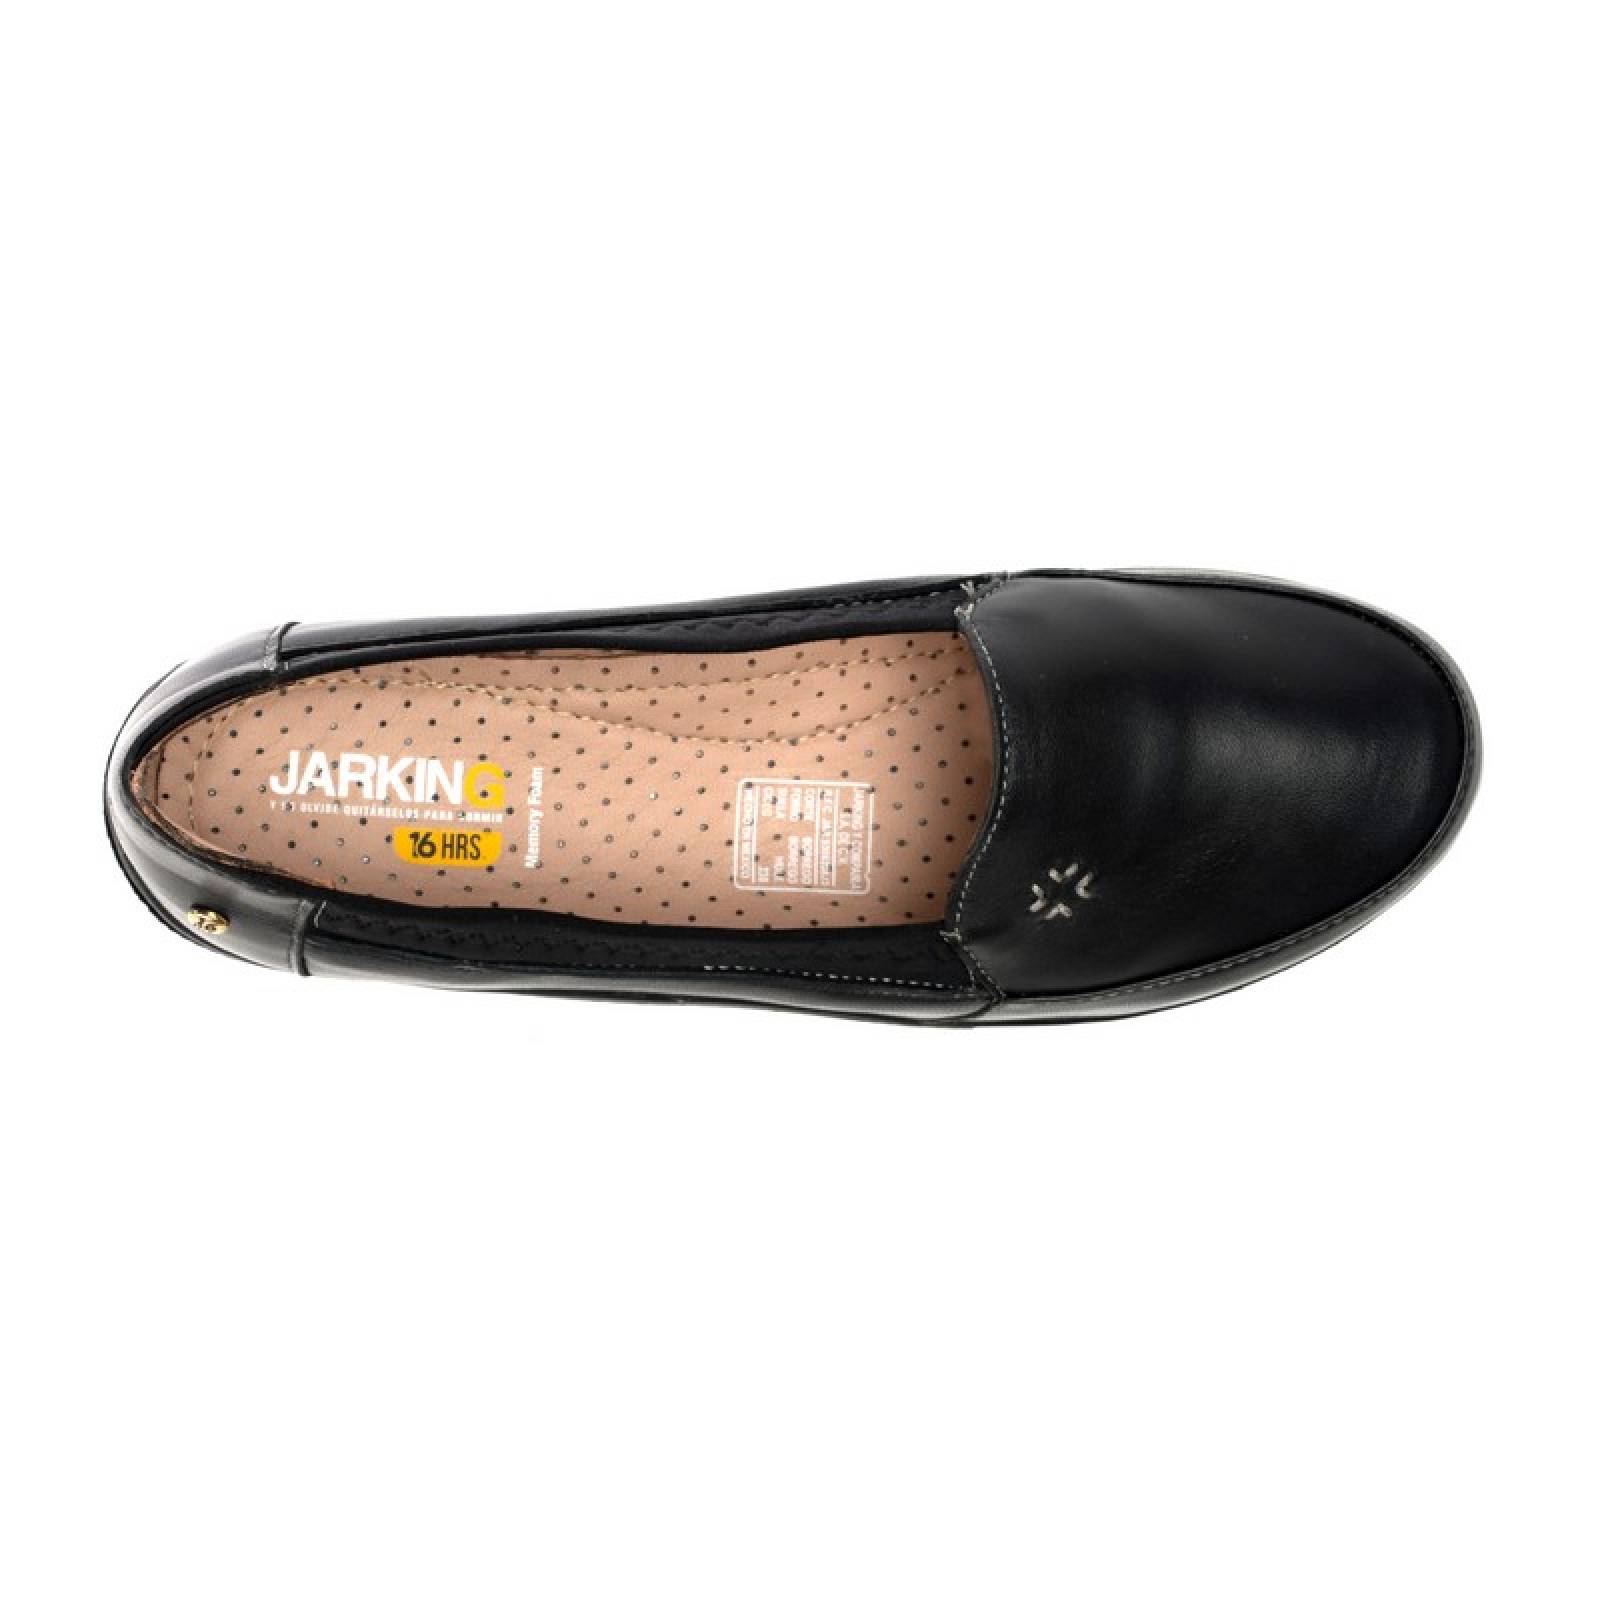 Jarking - Zapato Casual Negro con Detalle de Licra y Bordado a Mano para Dama